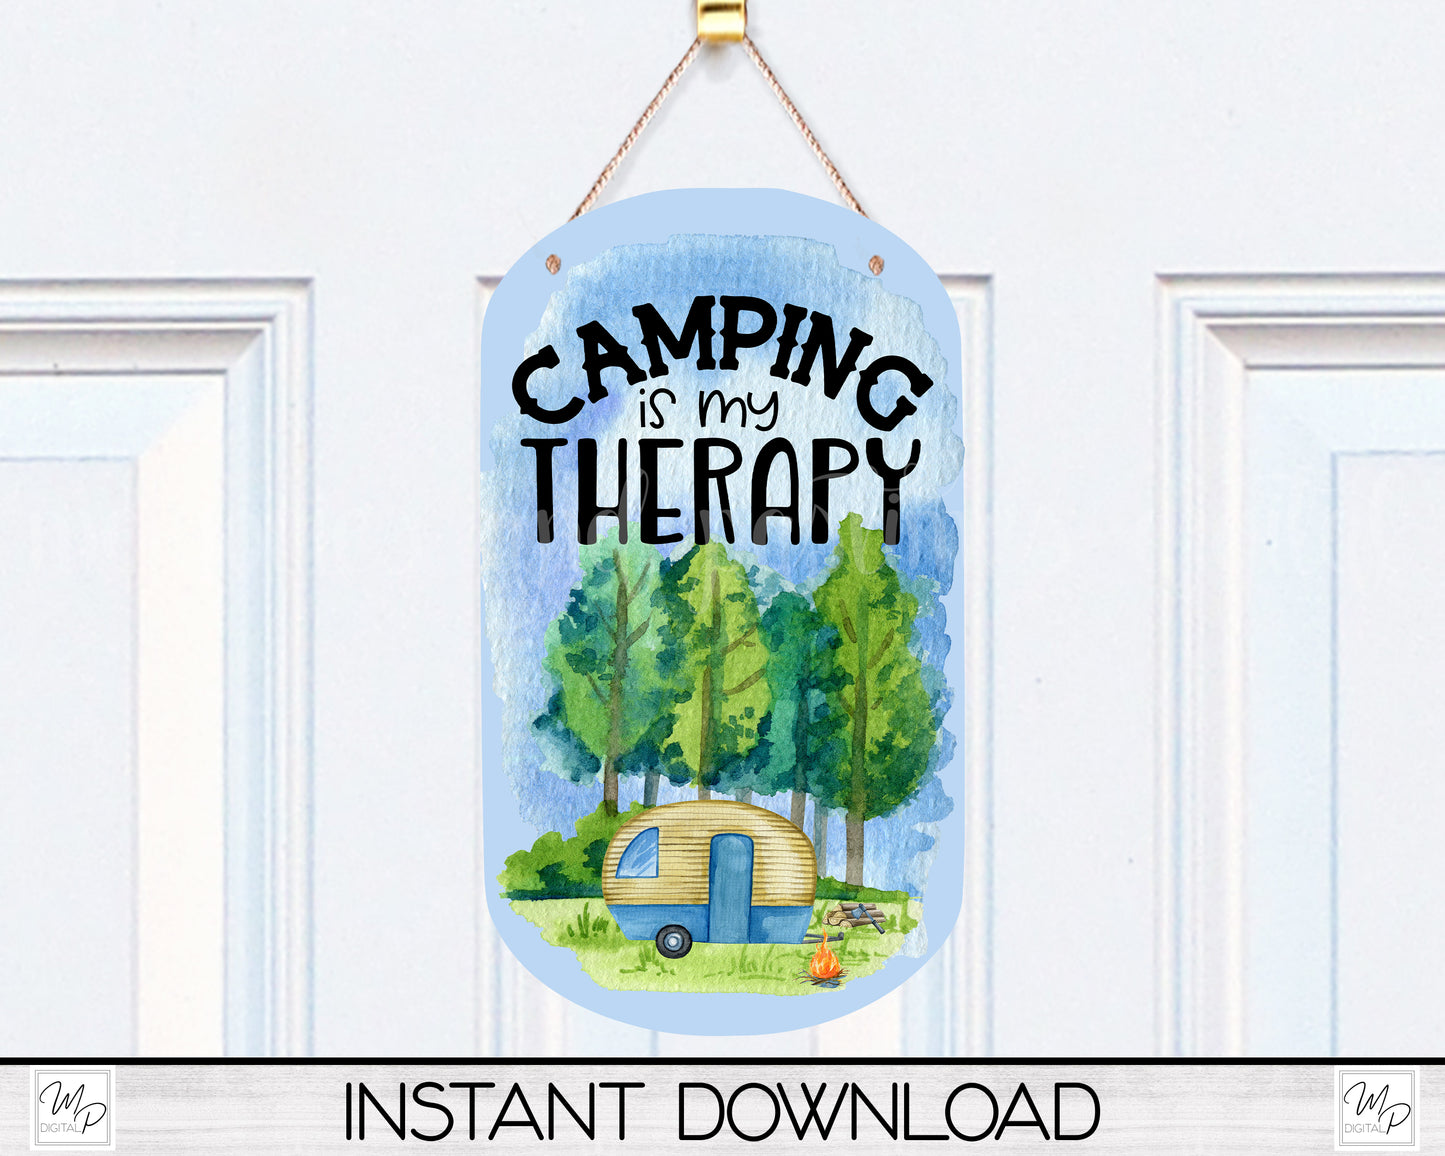 Camping Dog Tag Keychain Sublimation PNG Design, Digital Download for Sublimation, MDF Camper Sign PNG